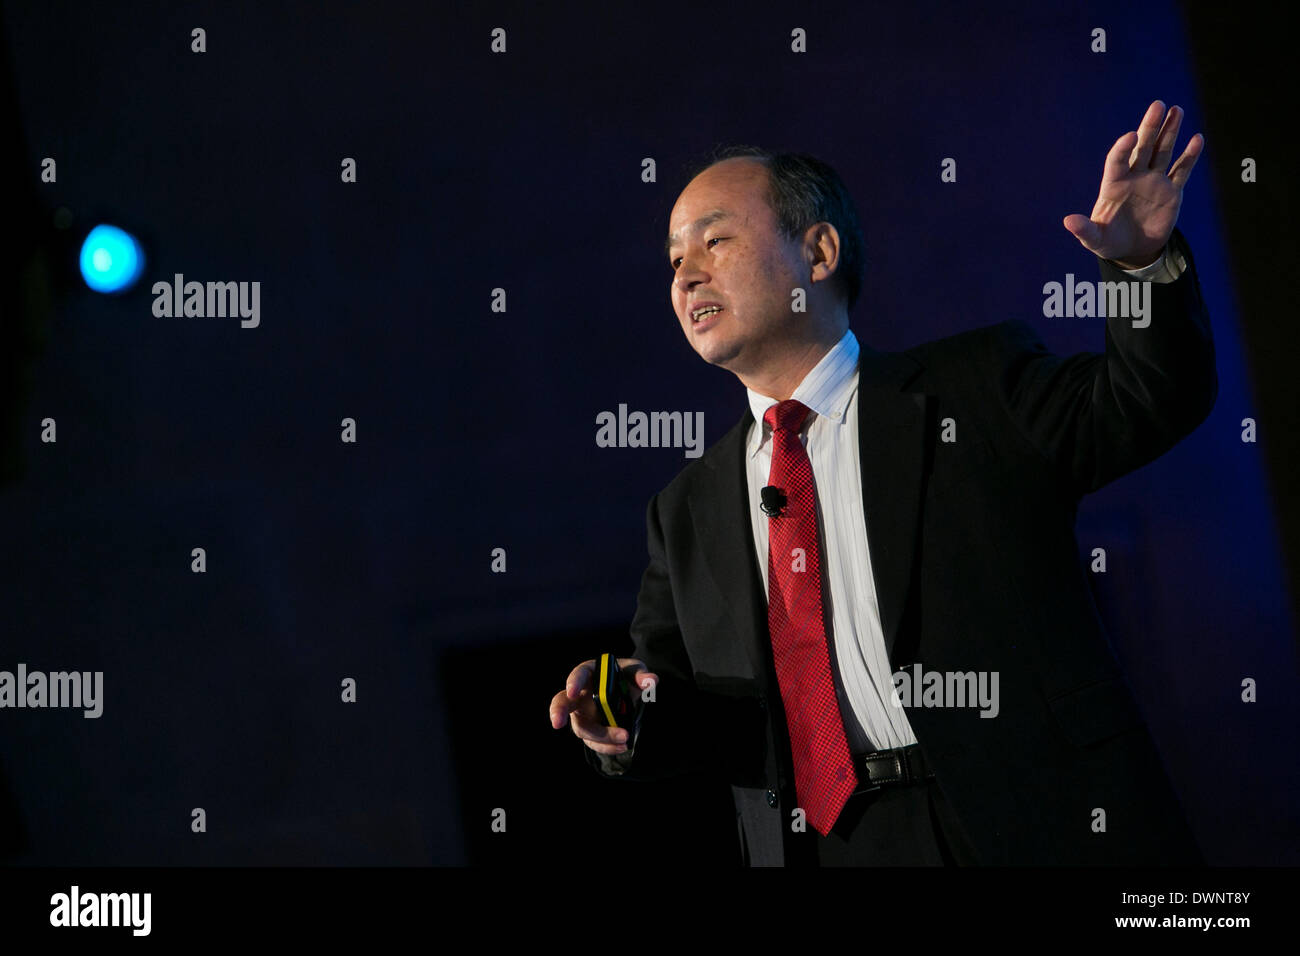 Washington DC, Estados Unidos. 11 de marzo de 2014. Masayoshi son, fundador, presidente, CEO y Presidente de SoftBank Corporation, habla en la Cámara de Comercio de EE.UU . Crédito: Kristoffer Tripplaar/Alamy Live News Foto de stock